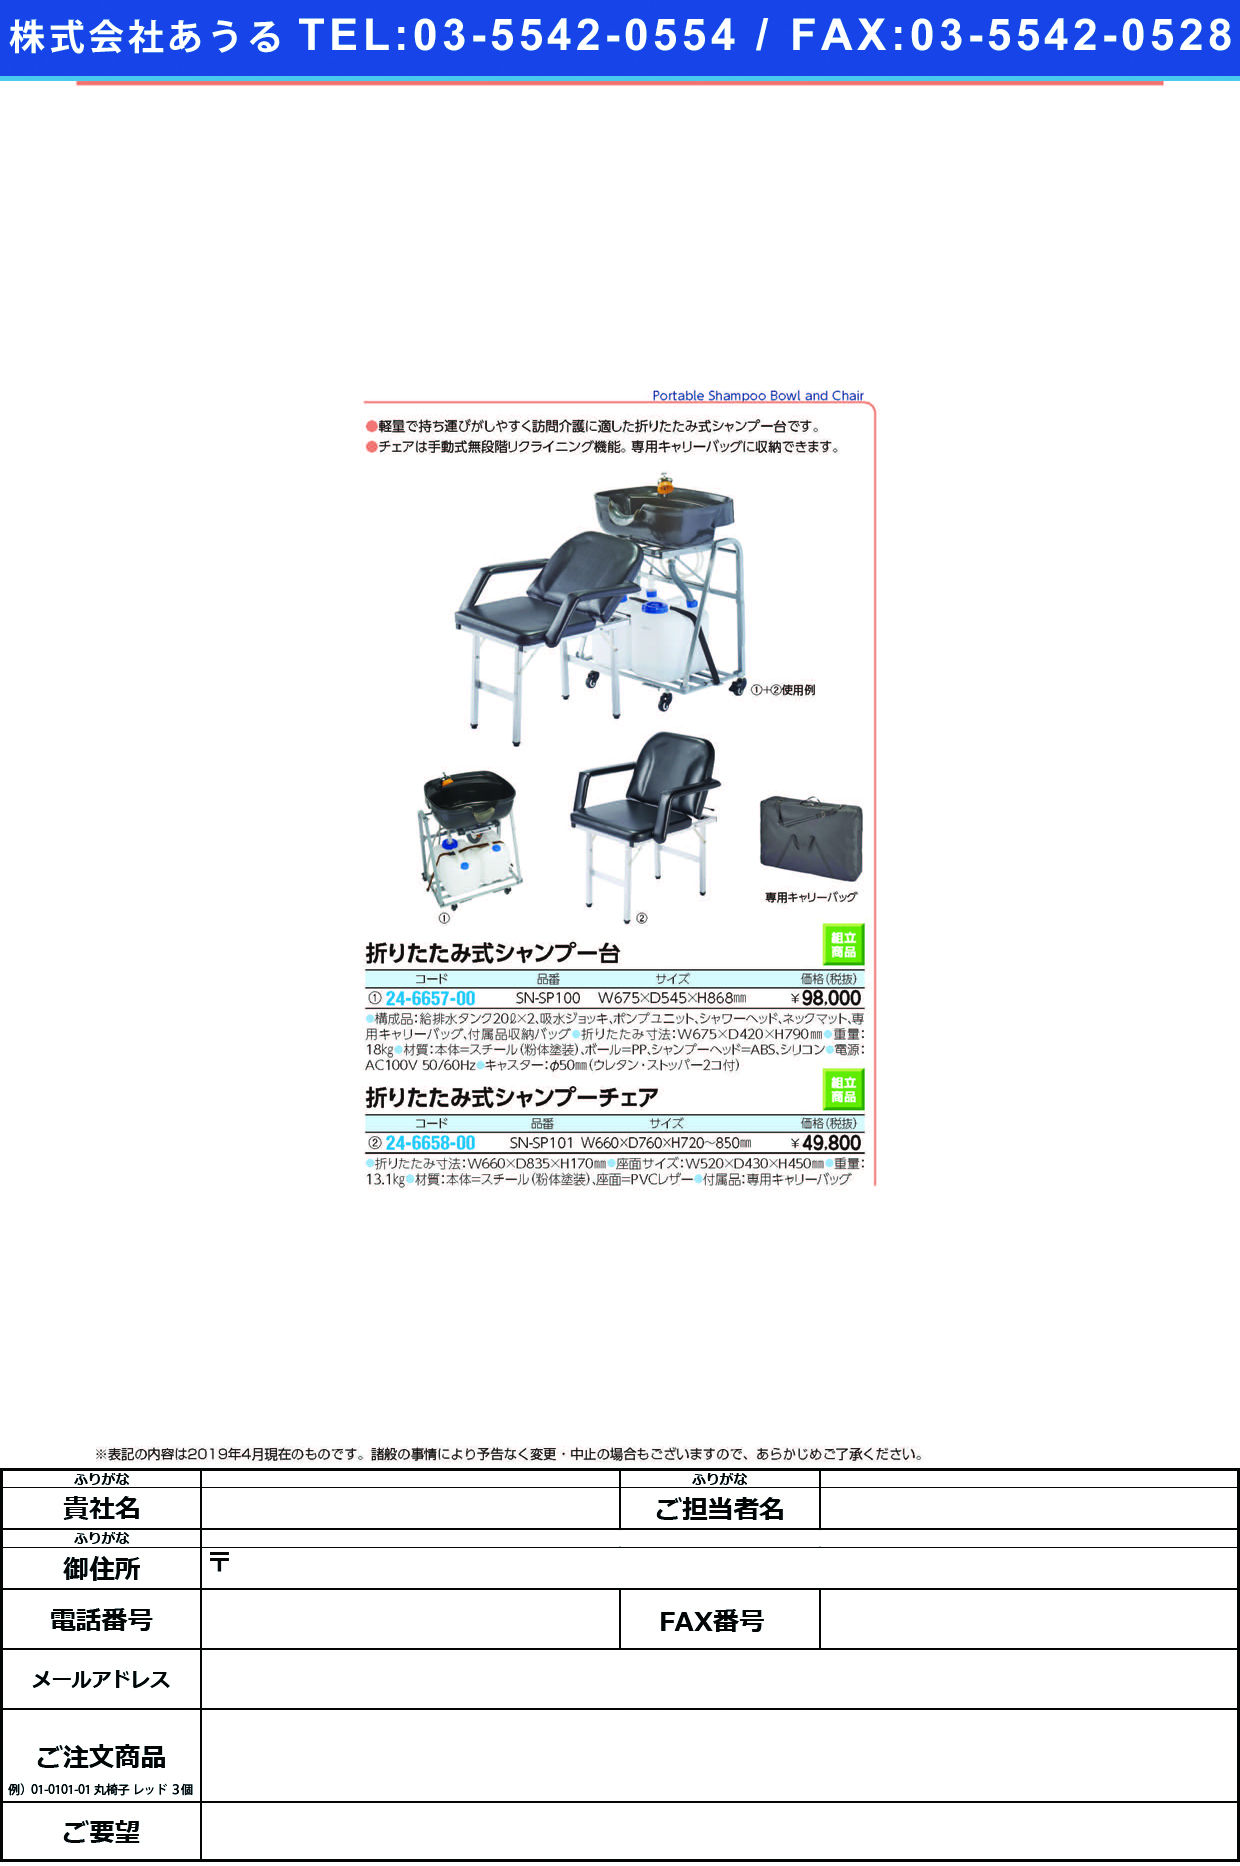 (24-6658-00)折りたたみ式シャンプーチェア SN-SP101 ｵﾘﾀﾀﾐｼｷｼｬﾝﾌﾟｰﾁｪｱ【1式単位】【2019年カタログ商品】